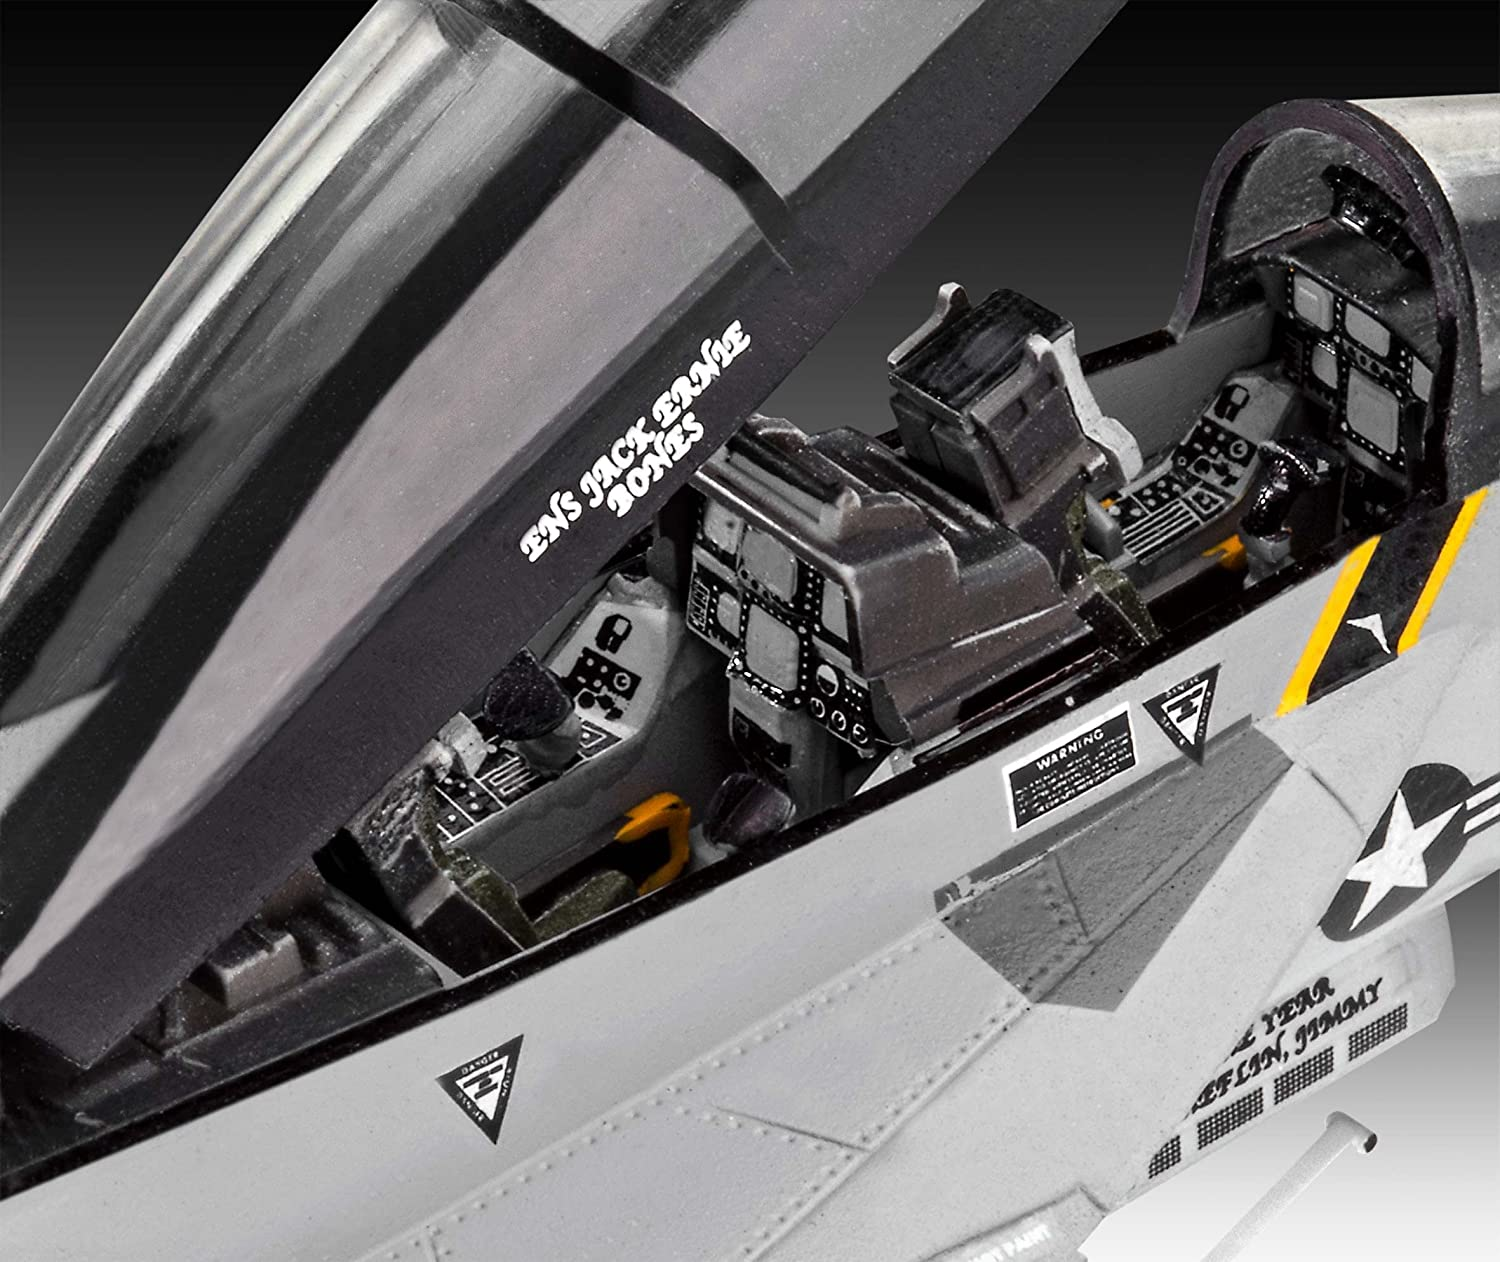 F/A-18F Modell Super Hornet REVELL Modellbau